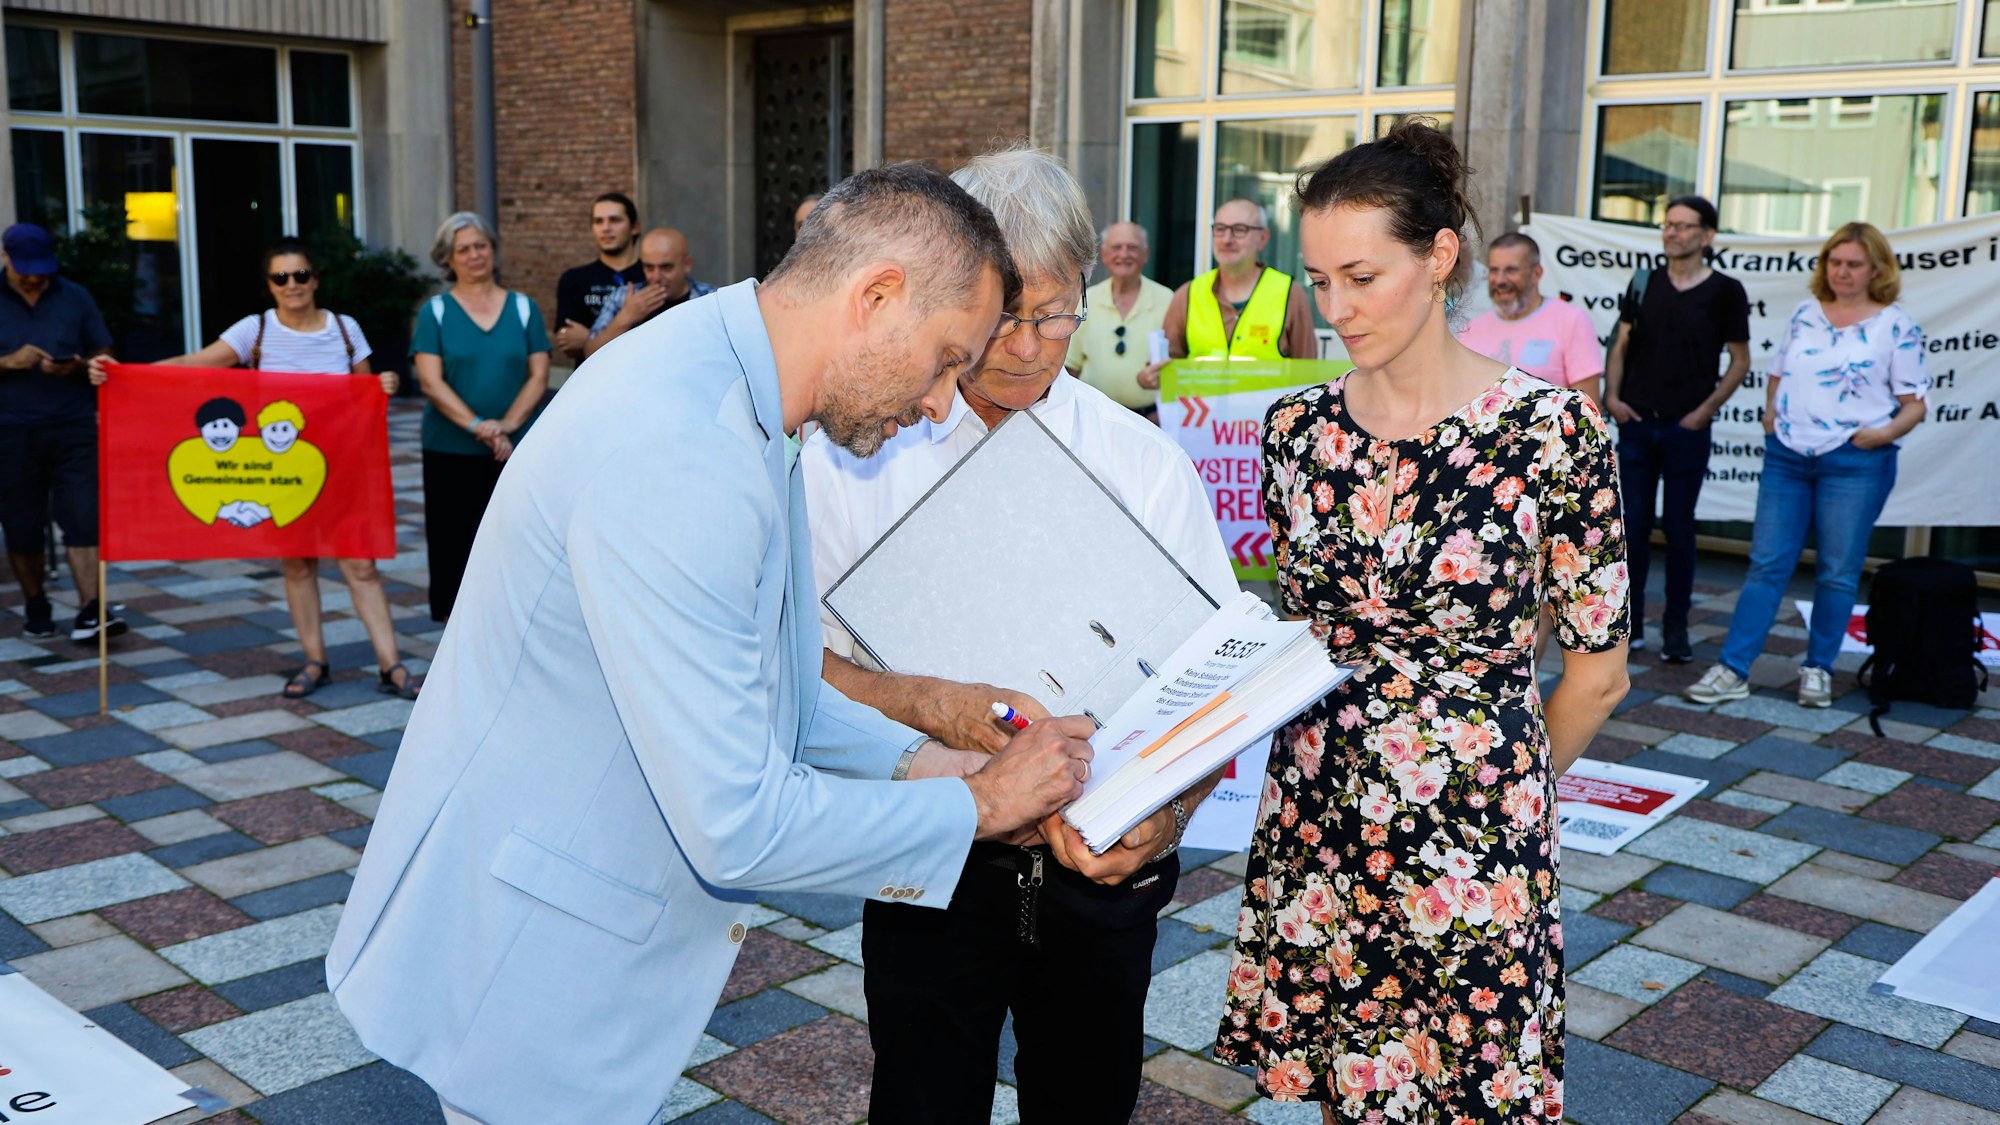 Dr. Ralf Unna (Ratsmitglied Grüne. Gesundheitspolitischer Sprecher.), Dr. Walther Klüwer (Inititator der Unterschriftensammlung) und Dr.Vanessa Fux (Initiatorin) auf dem Theo-Burauen-Platz in Köln.